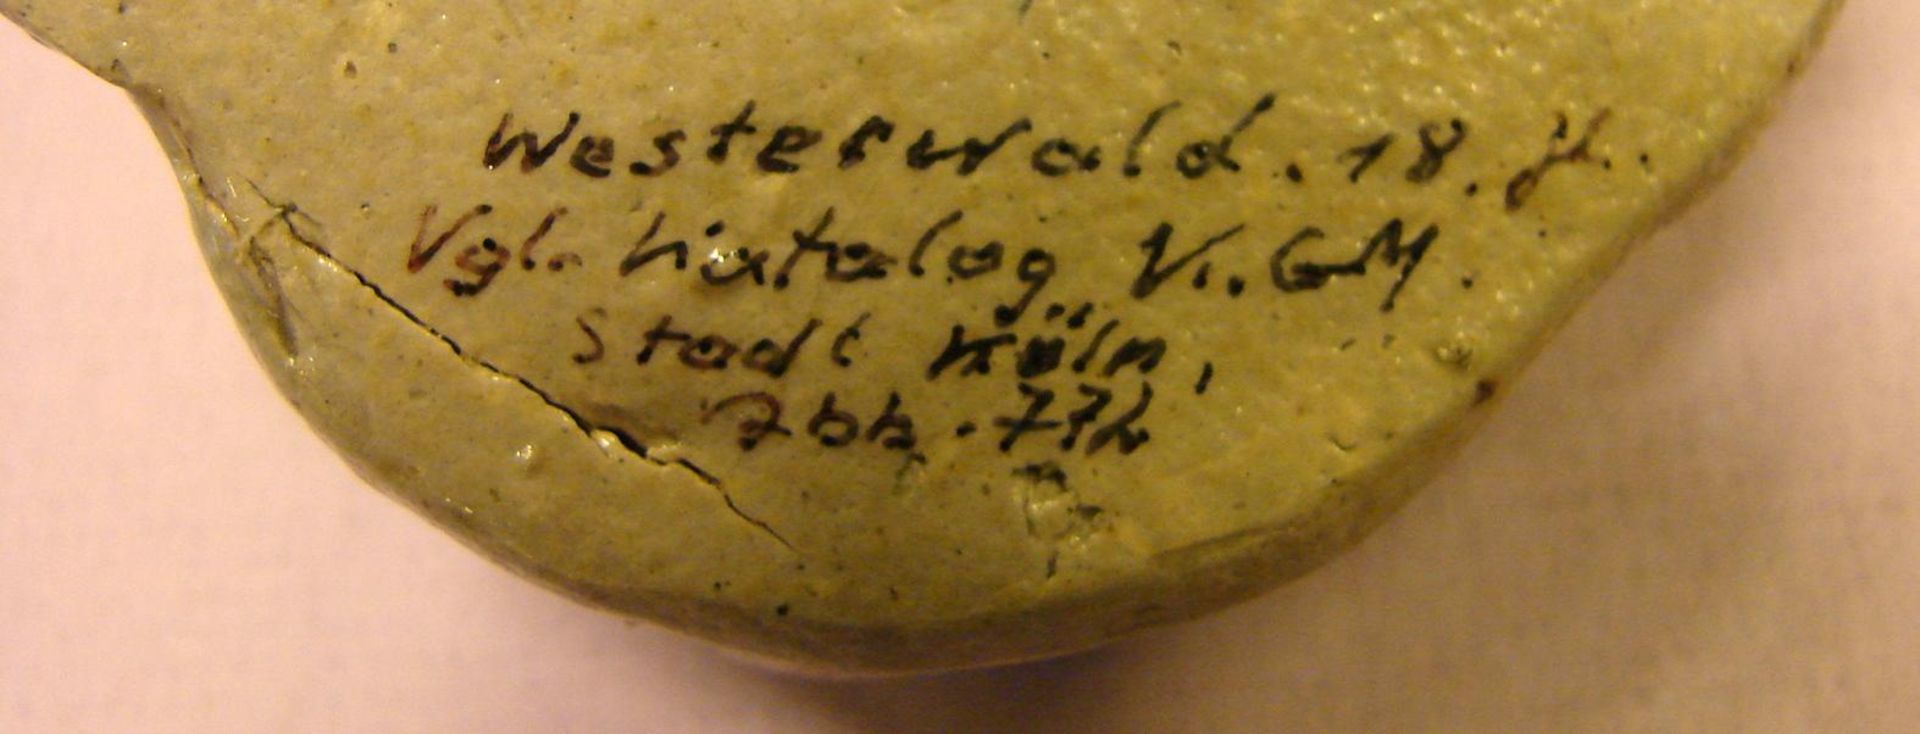 Weihwasserbehälter in Form eines Kinderkopfes, Westerwald, Rückseitige Bezeichnung,18. Jhd., Lit.: - Bild 2 aus 2